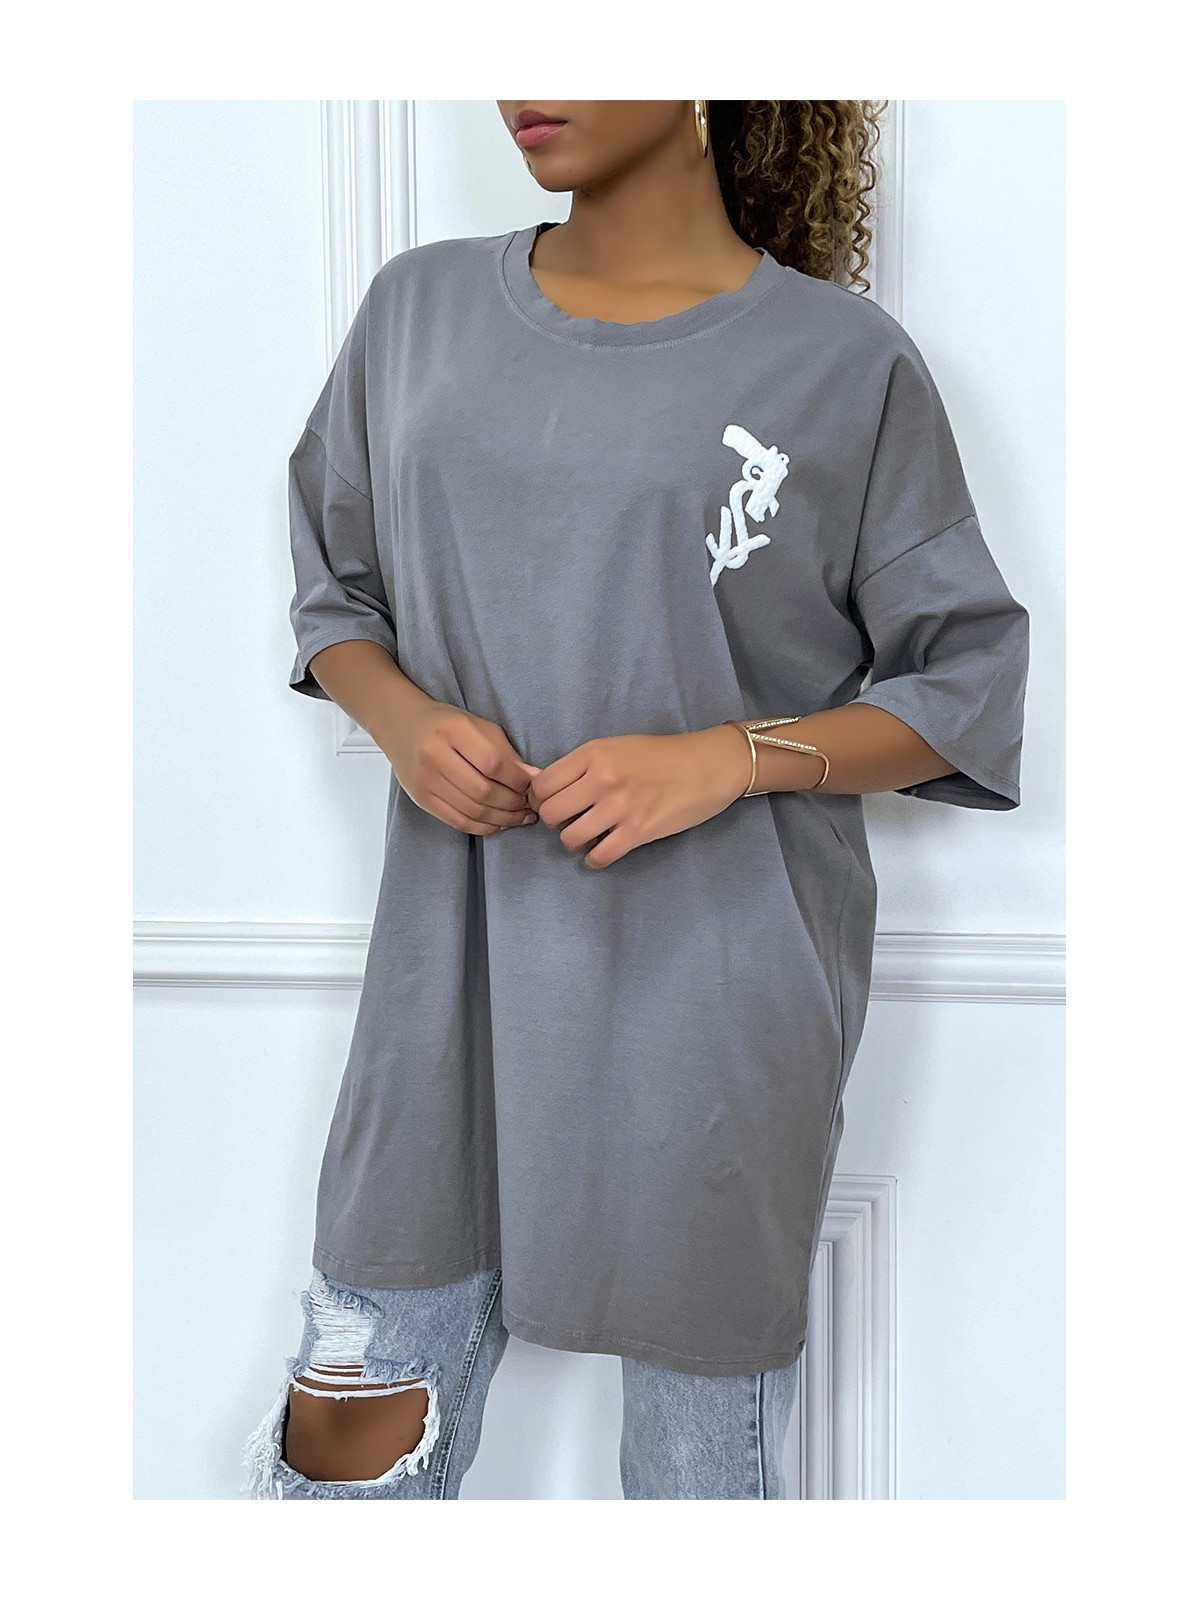 Tee-shirt oversize anthracite tendance avec dessin en coton - 5